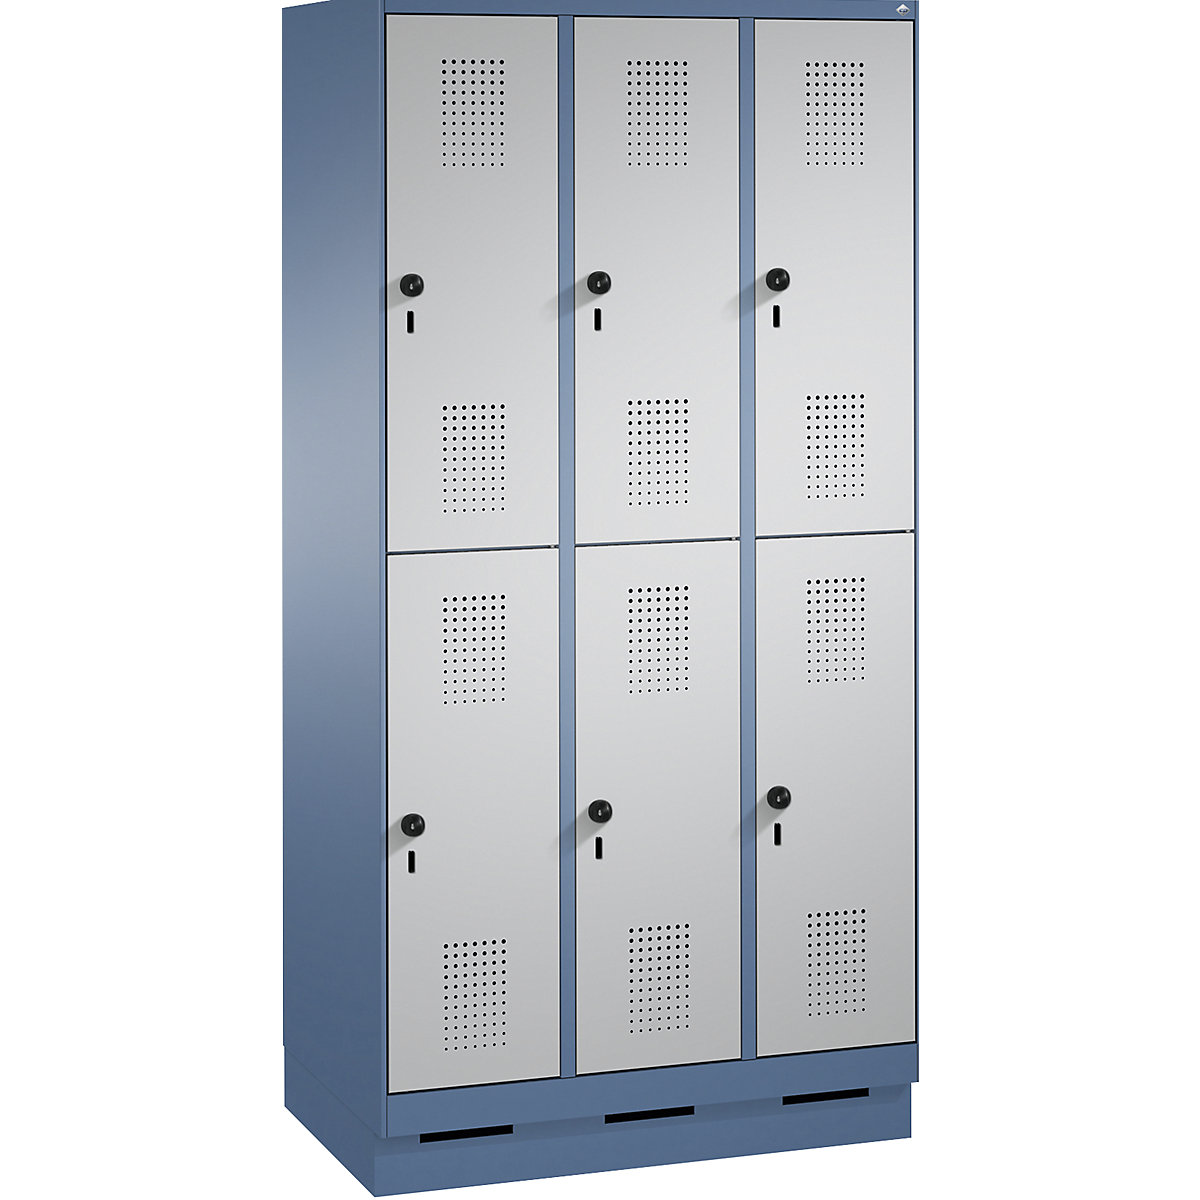 Penderie sur socle EVOLO à deux étages – C+P, 3 compartiments, 2 casiers chacun, largeur compartiments 300 mm, bleu distant / aluminium-9